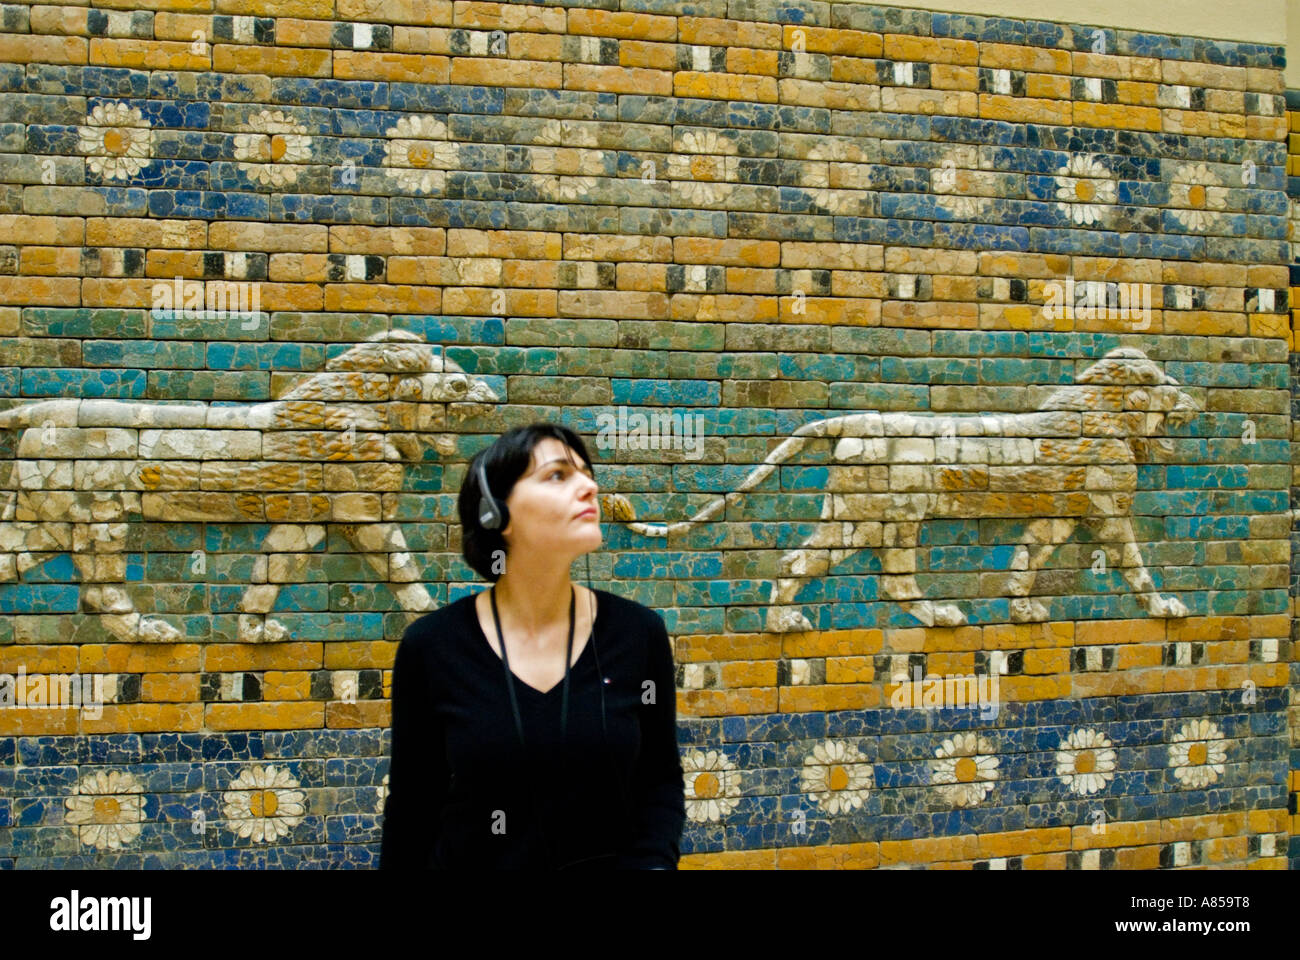 Voie processionnelle avec mosaïques lion sacré menant à la porte d'Ishtar à Babylone à l'intérieur de Musée de Pergame Berlin Allemagne Banque D'Images